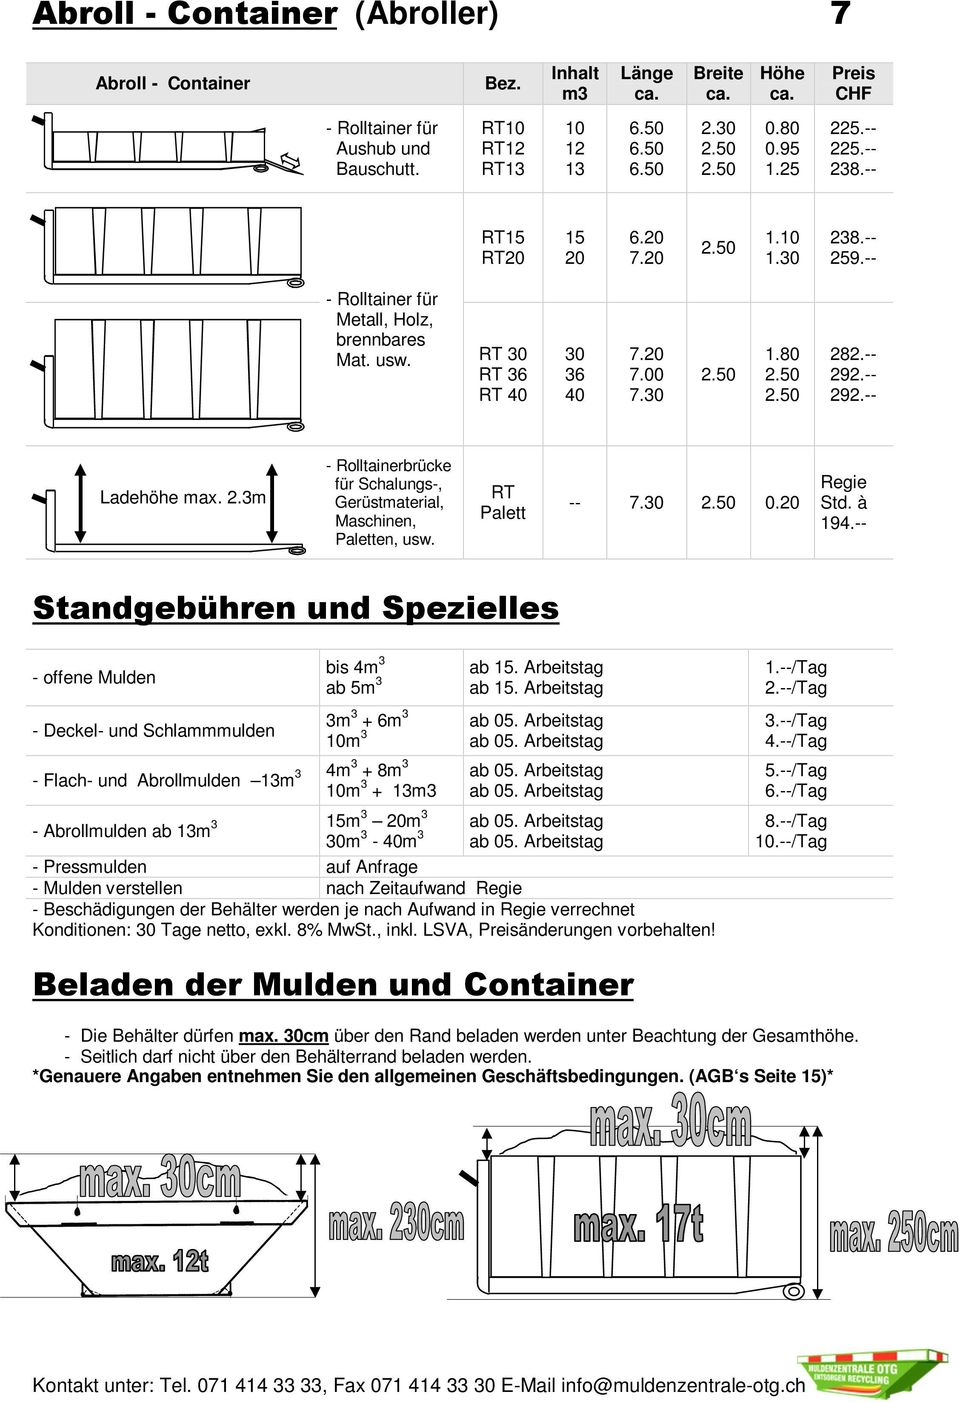 50 282.-- 292.-- 292.-- Ladehöhe max. 2.3m - Rolltainerbrücke für Schalungs-, Gerüstmaterial, Maschinen, Paletten, usw. RT Palett -- 7.30 2.50 0.20 Regie Std. à 194.